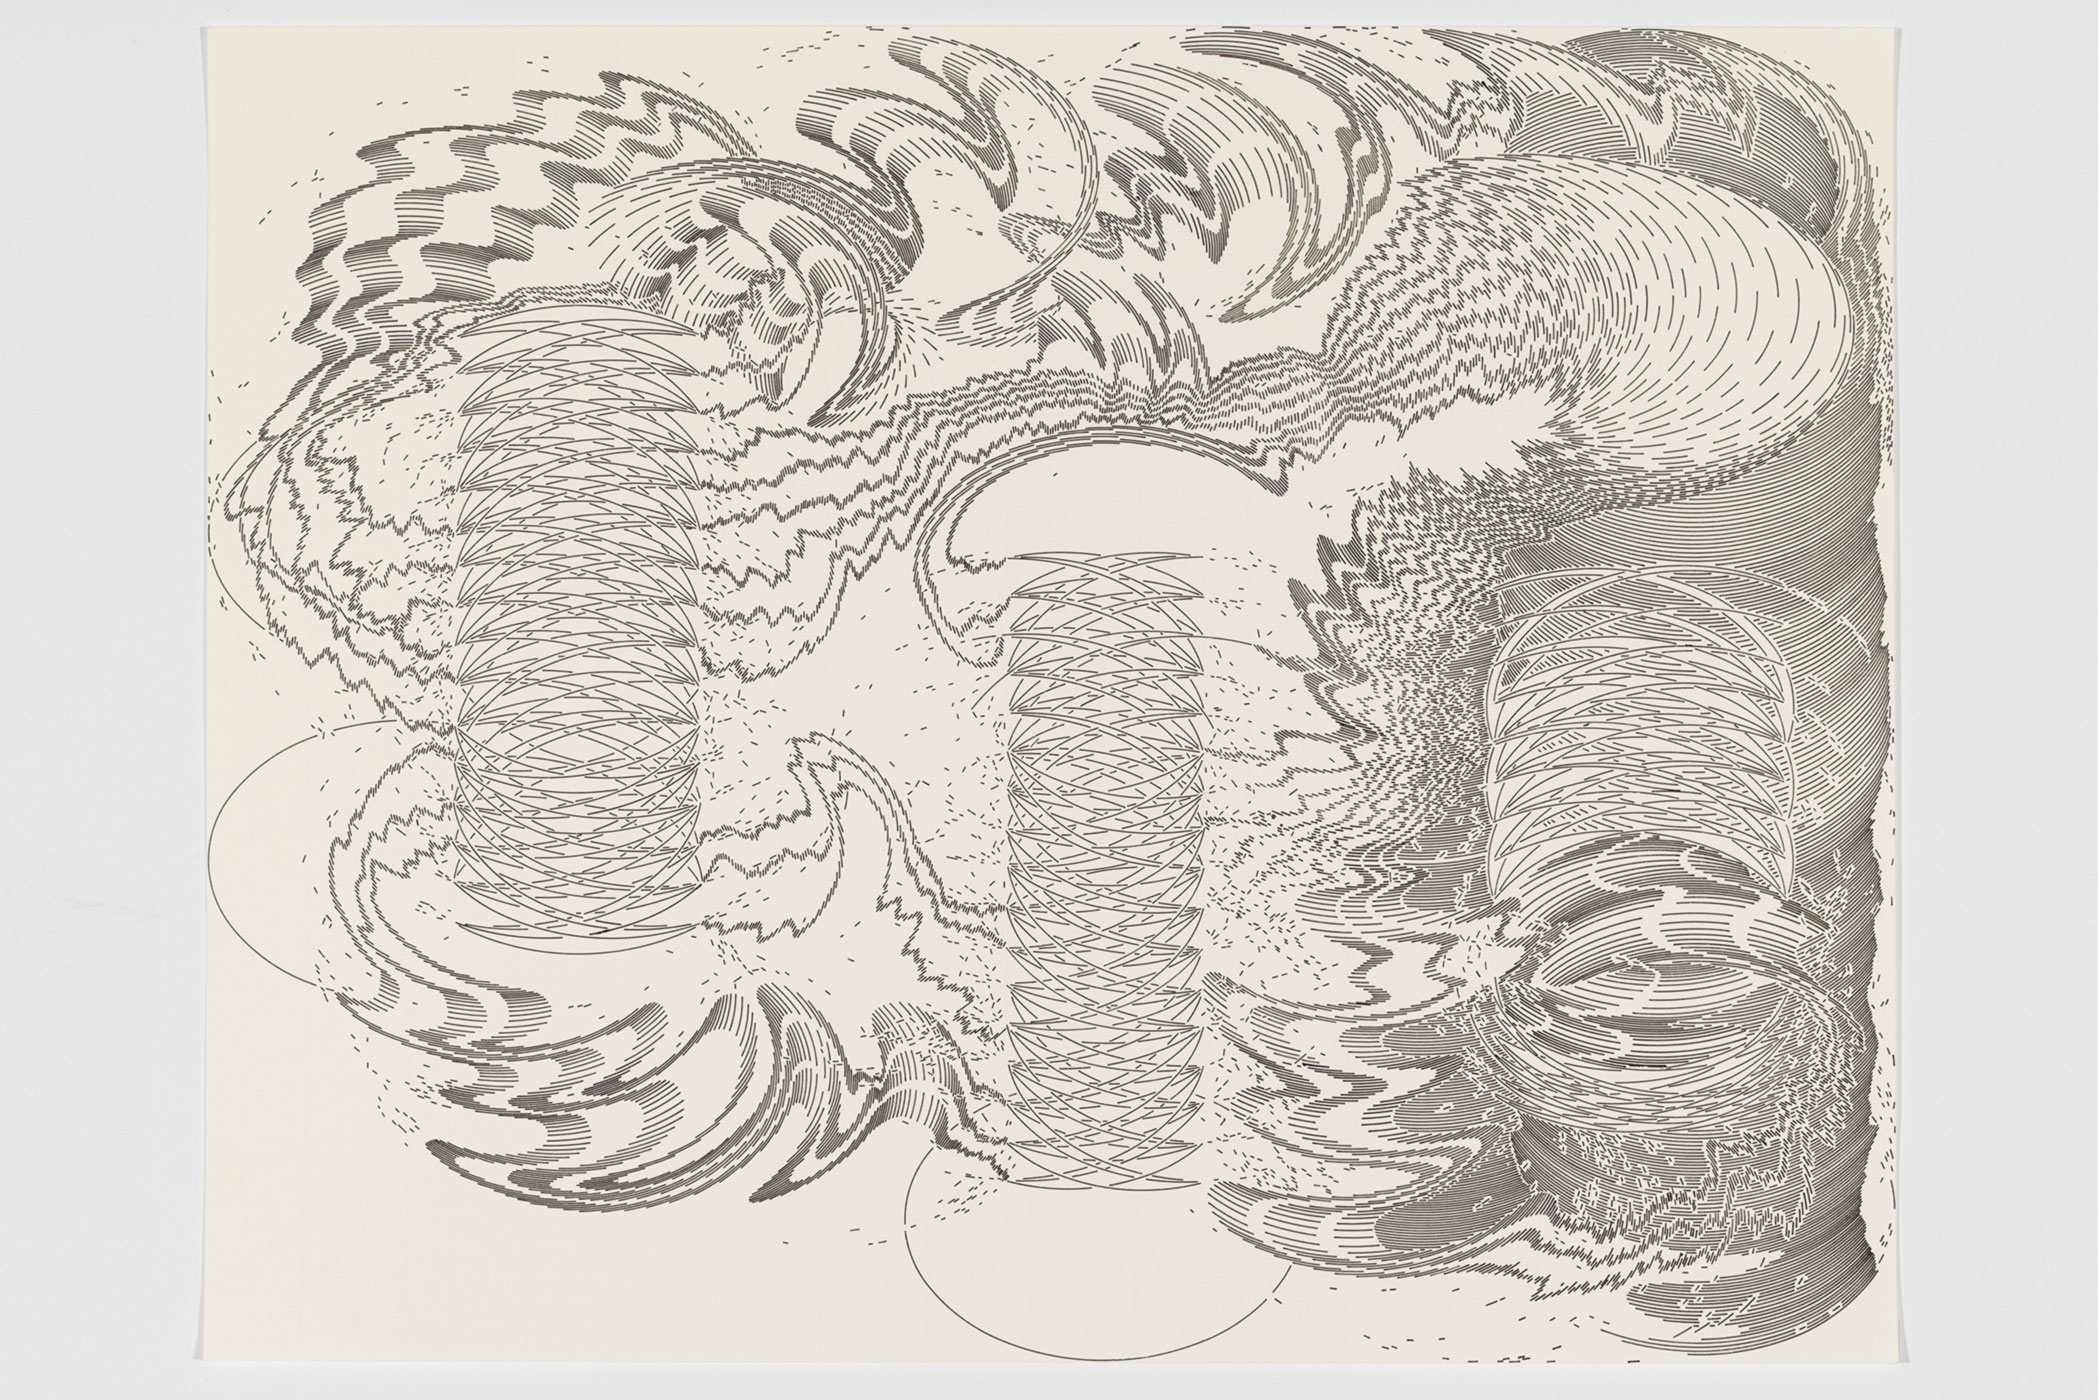 #371; 2019; Tusche auf Papier (Ink on paper); 34,3 x 43,4 cm (13,5" x 17"); Foto: Annette Kradisch